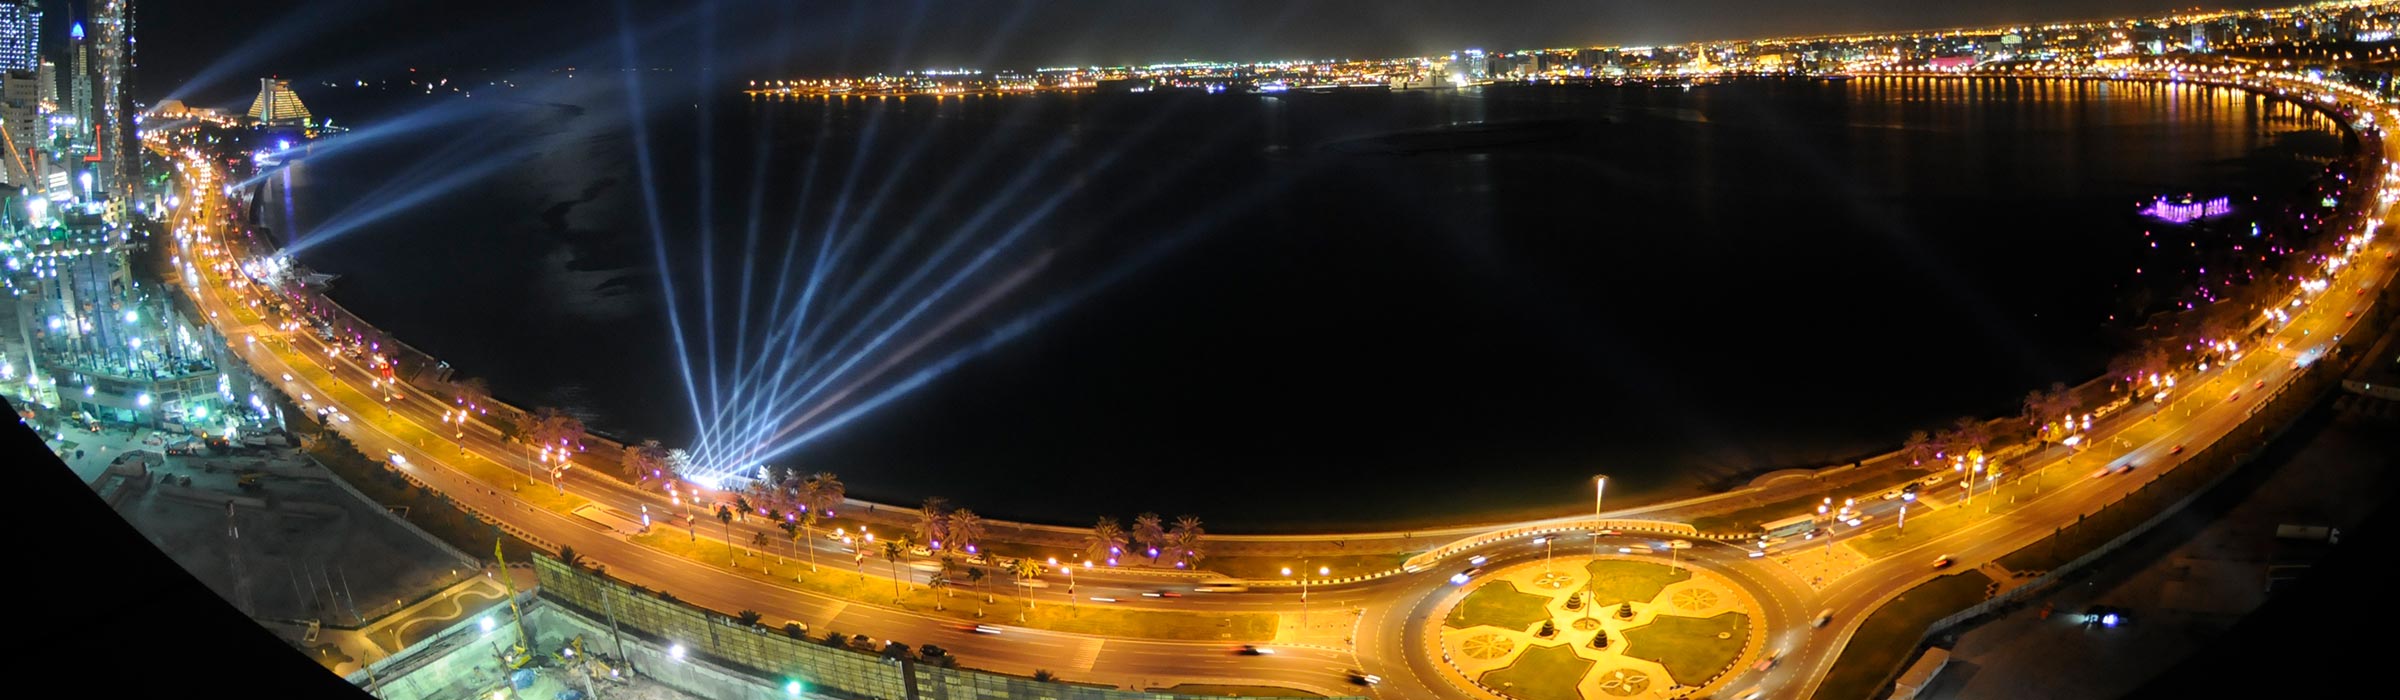 Referenz Qatar Nationalfeiertag